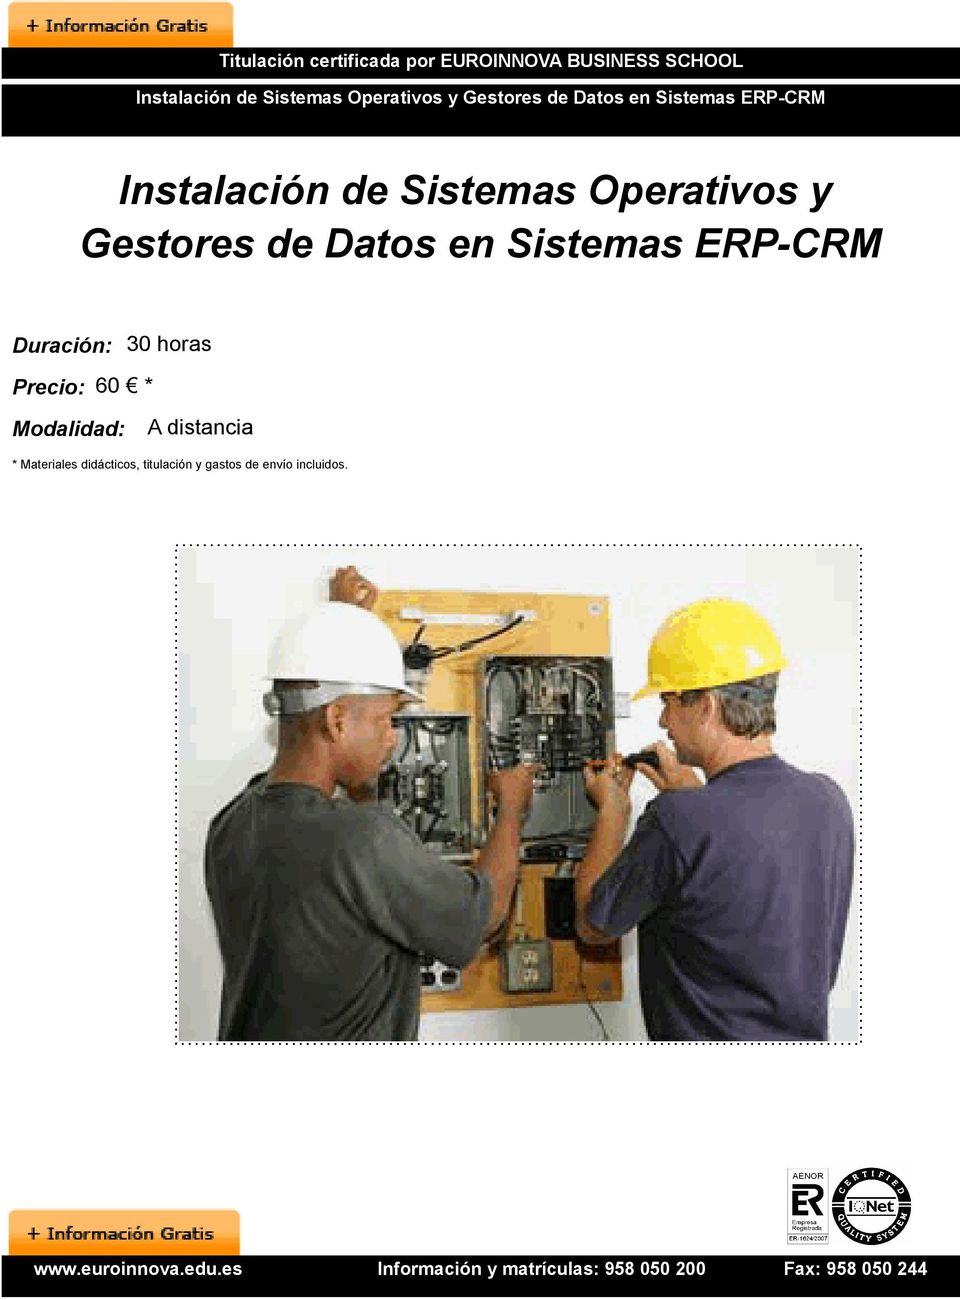 Operativos y Gestores de Datos en Sistemas ERP-CRM Duración: 30 horas Precio: 60